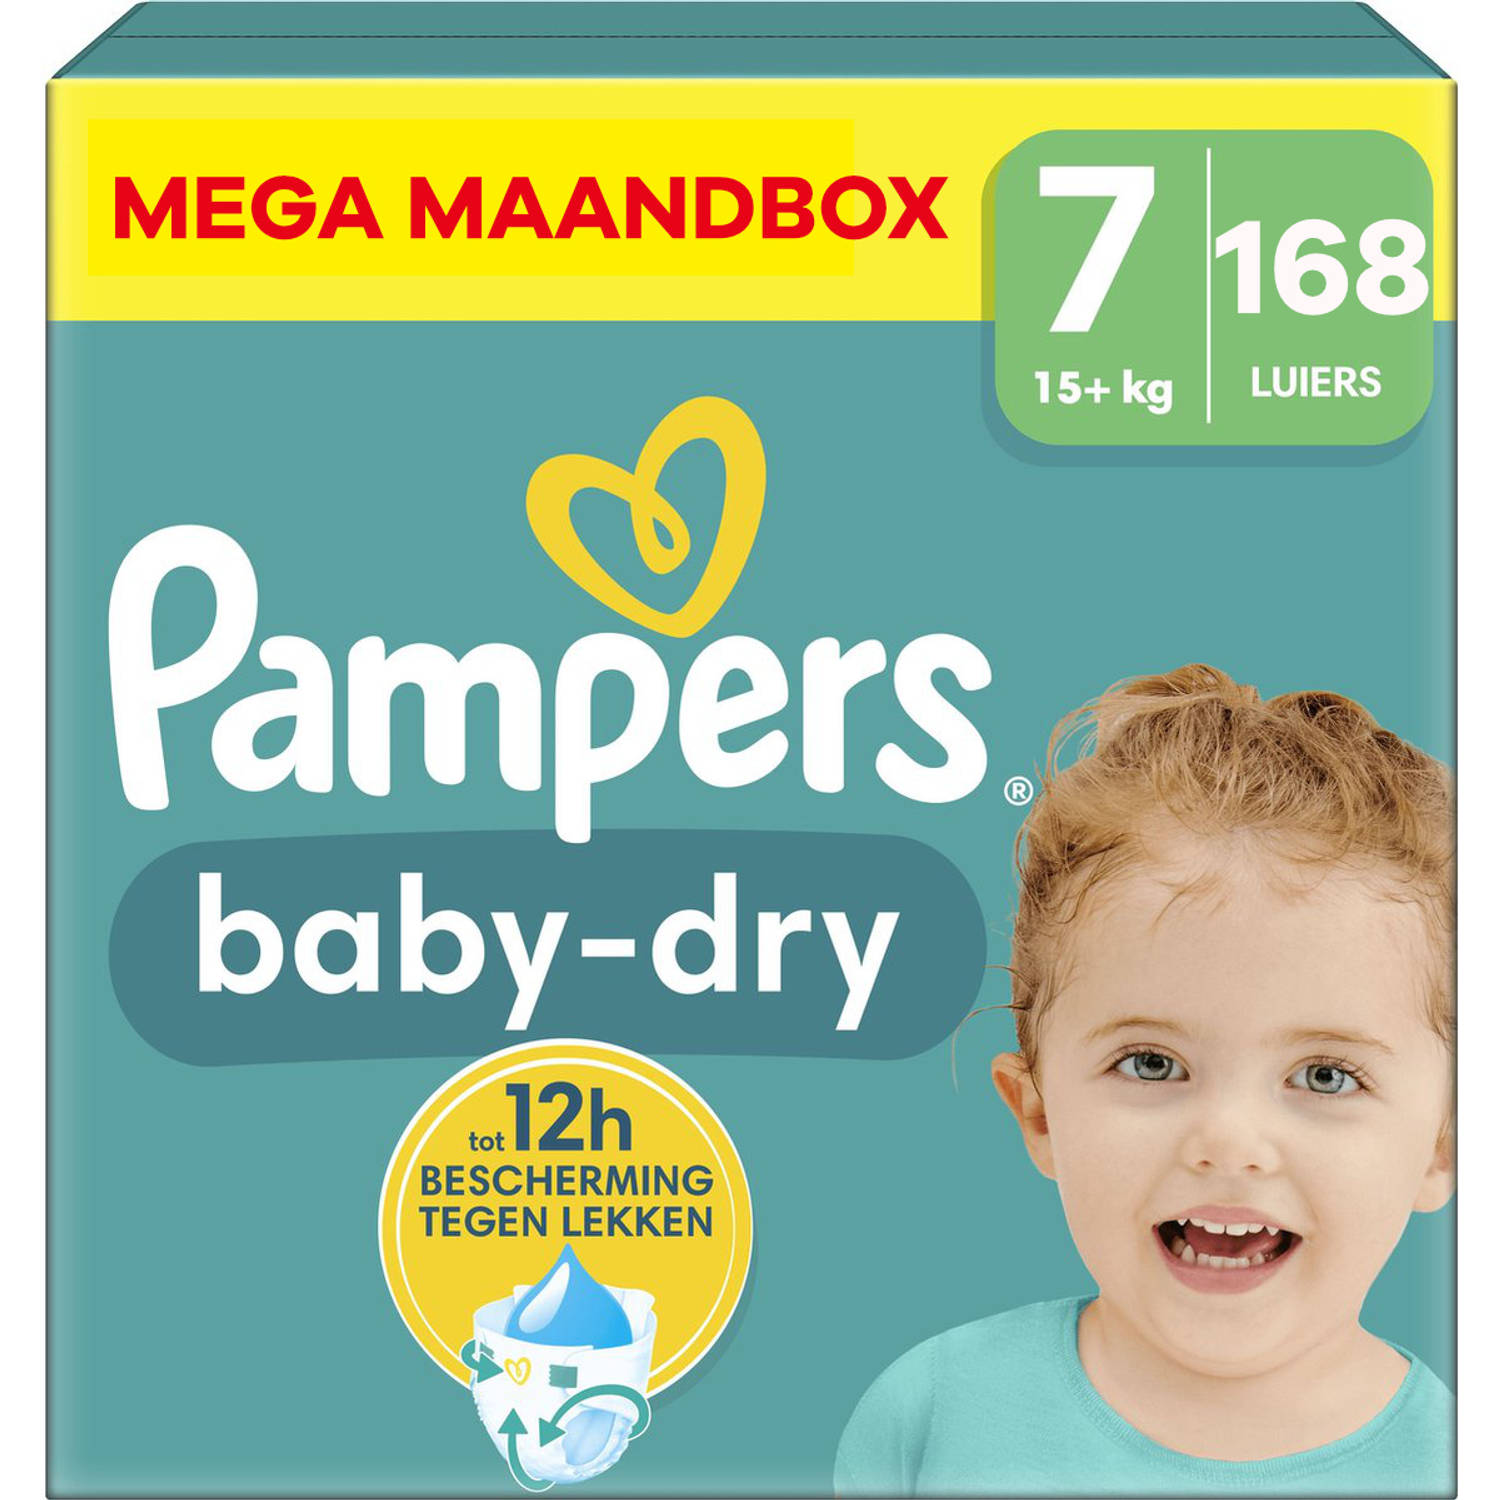 Pampers - Baby Dry - Maat 7 - Mega Maandbox - 168 stuks - 15+ KG